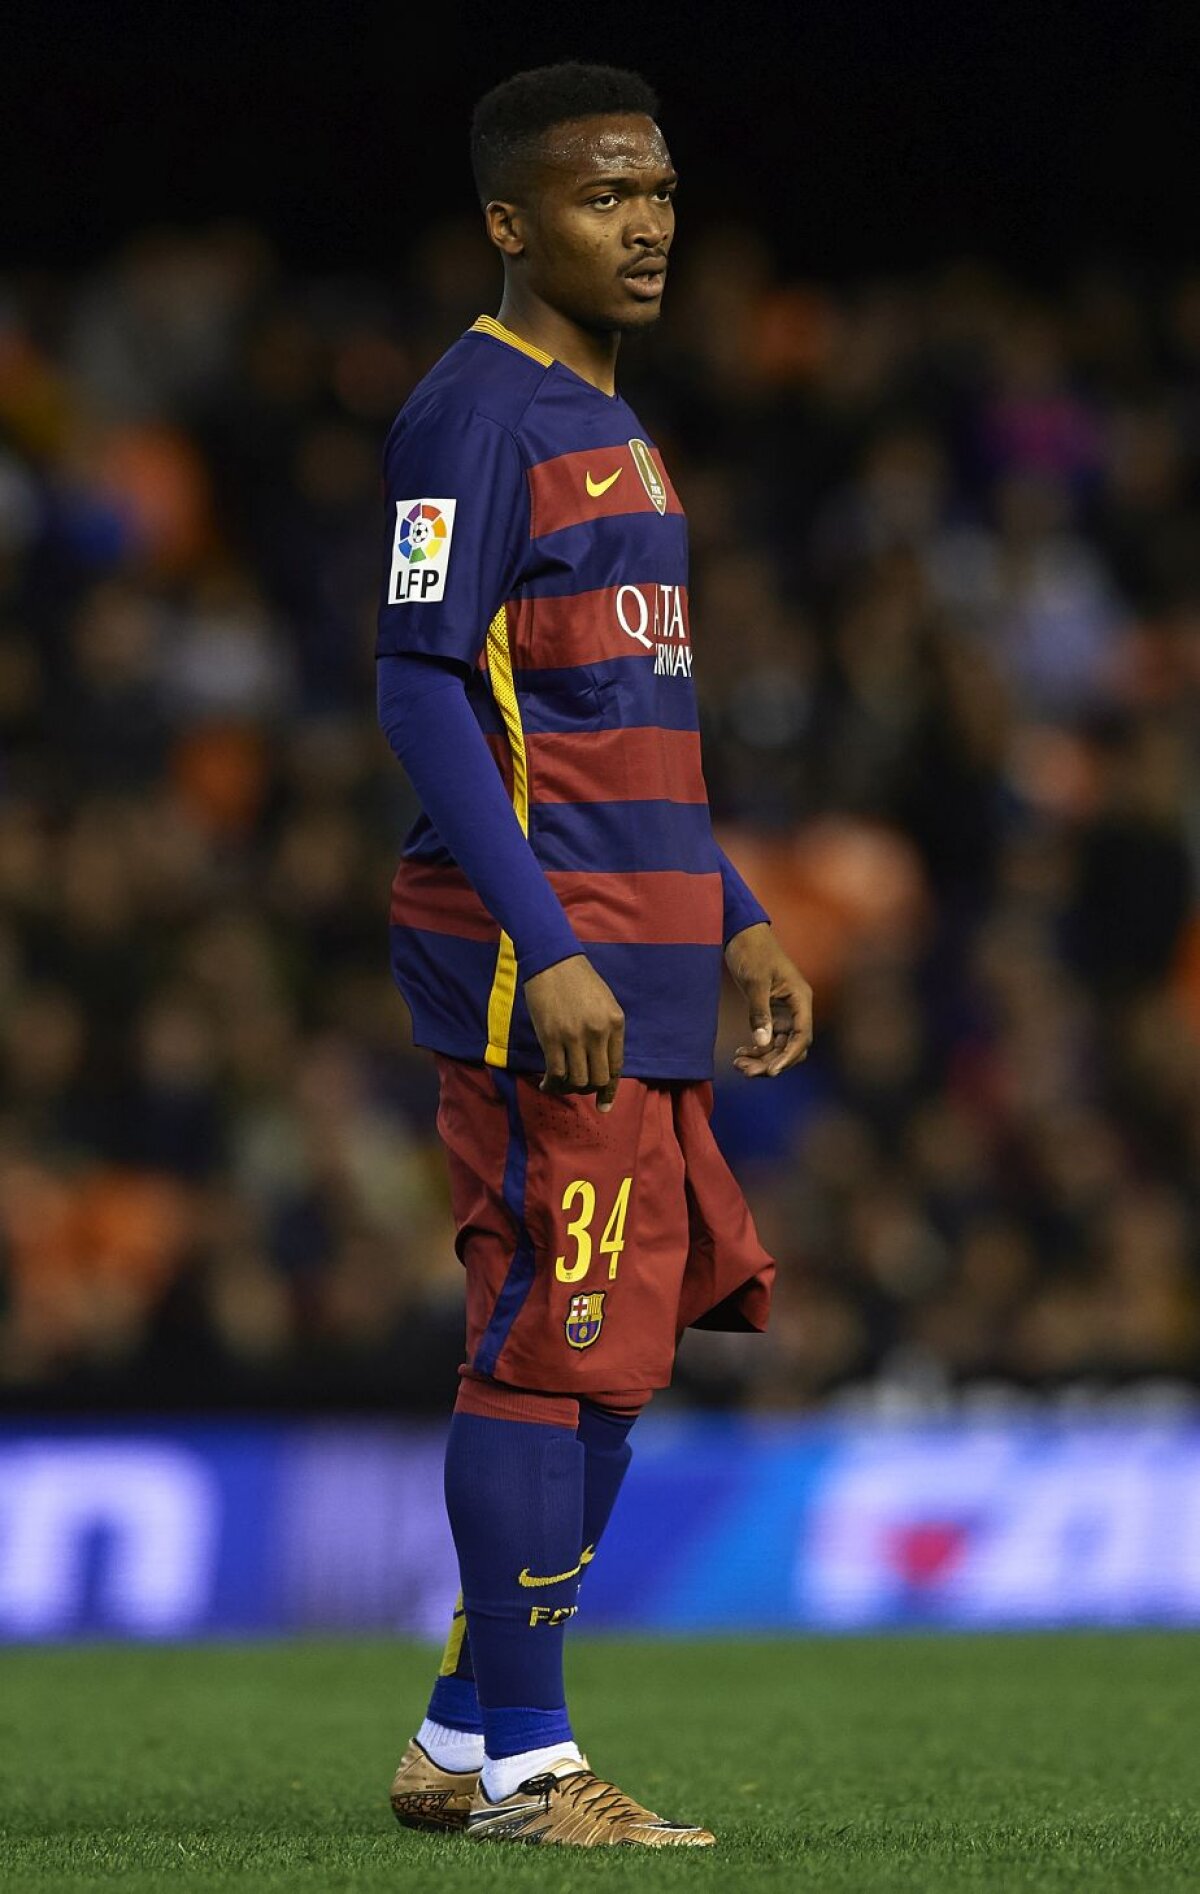 VIDEO + FOTO Barcelona s-a calificat în finala Cupei » Record stabilit de formația lui Luis Enrique + reacție nervoasă a antrenorului